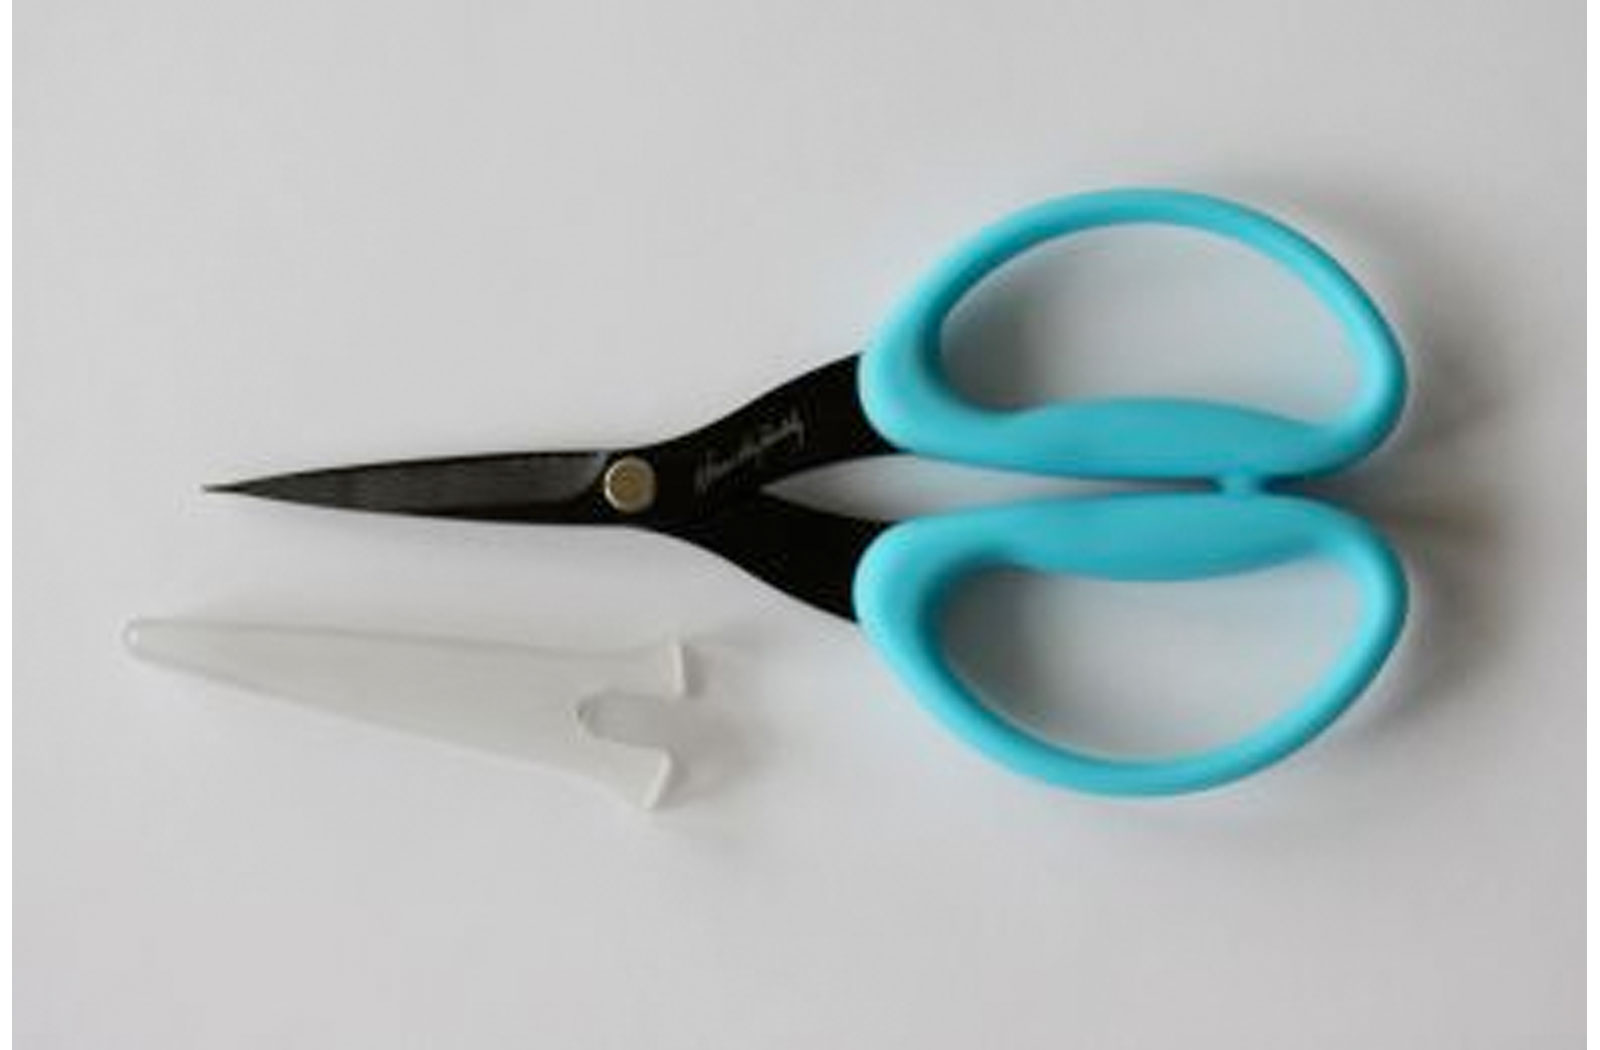 Perfect Scissors - Karen Kay Buckley Australia